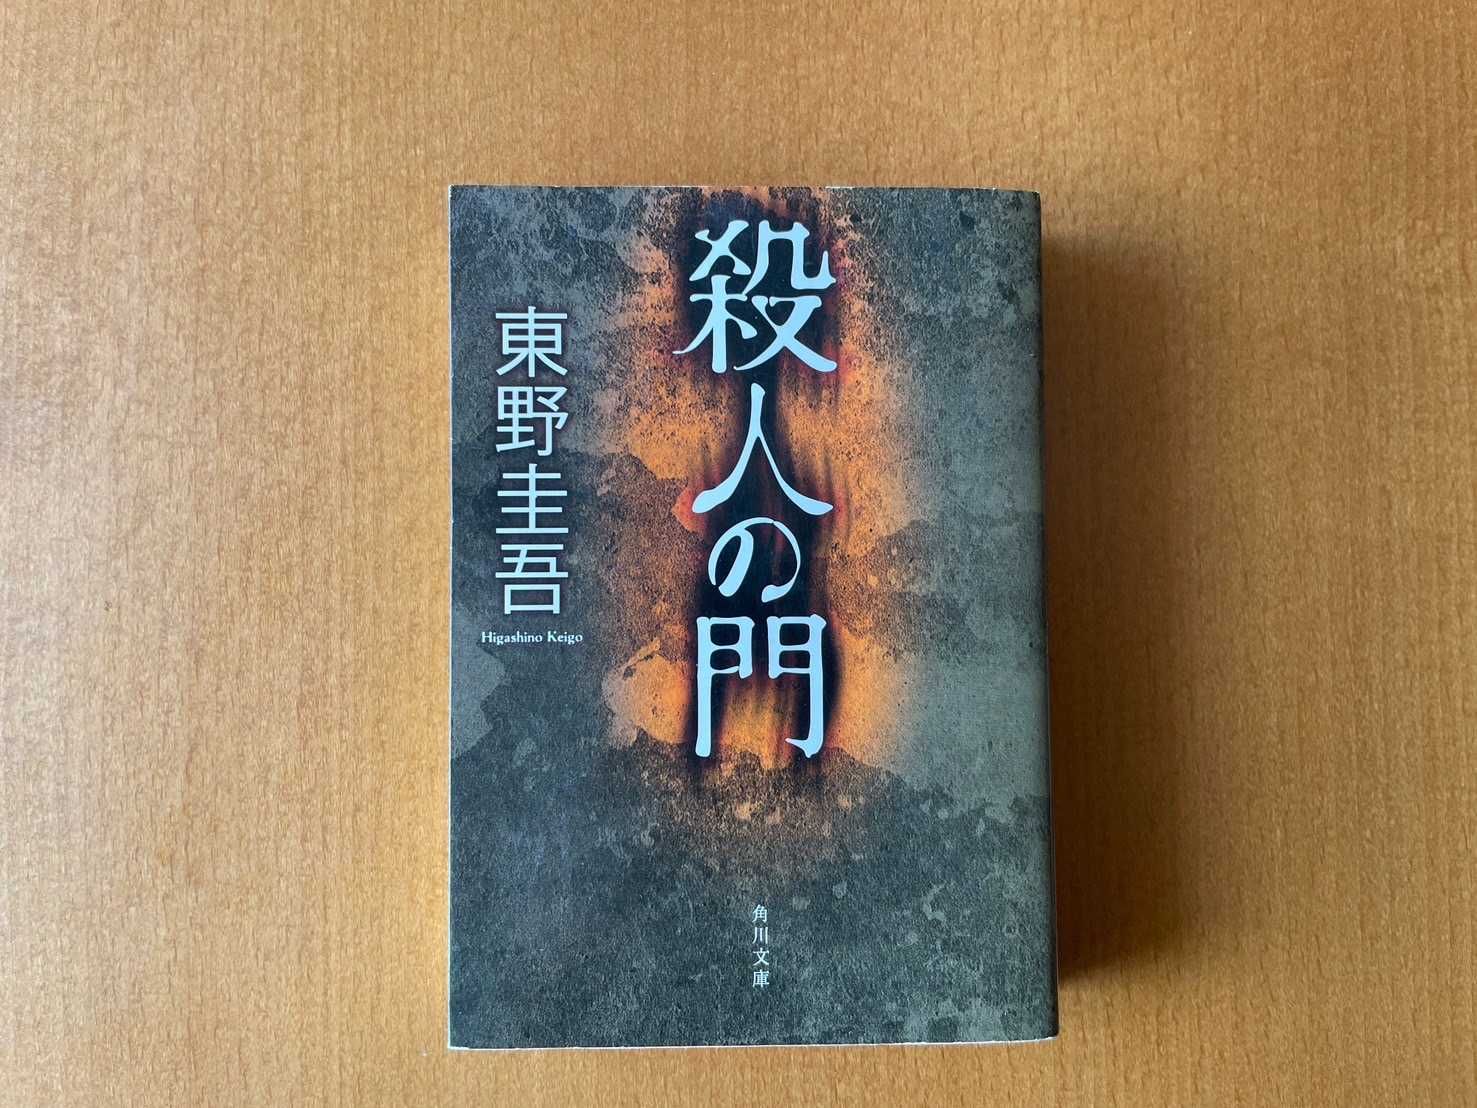 Książka Satsujin no mon po japońsku